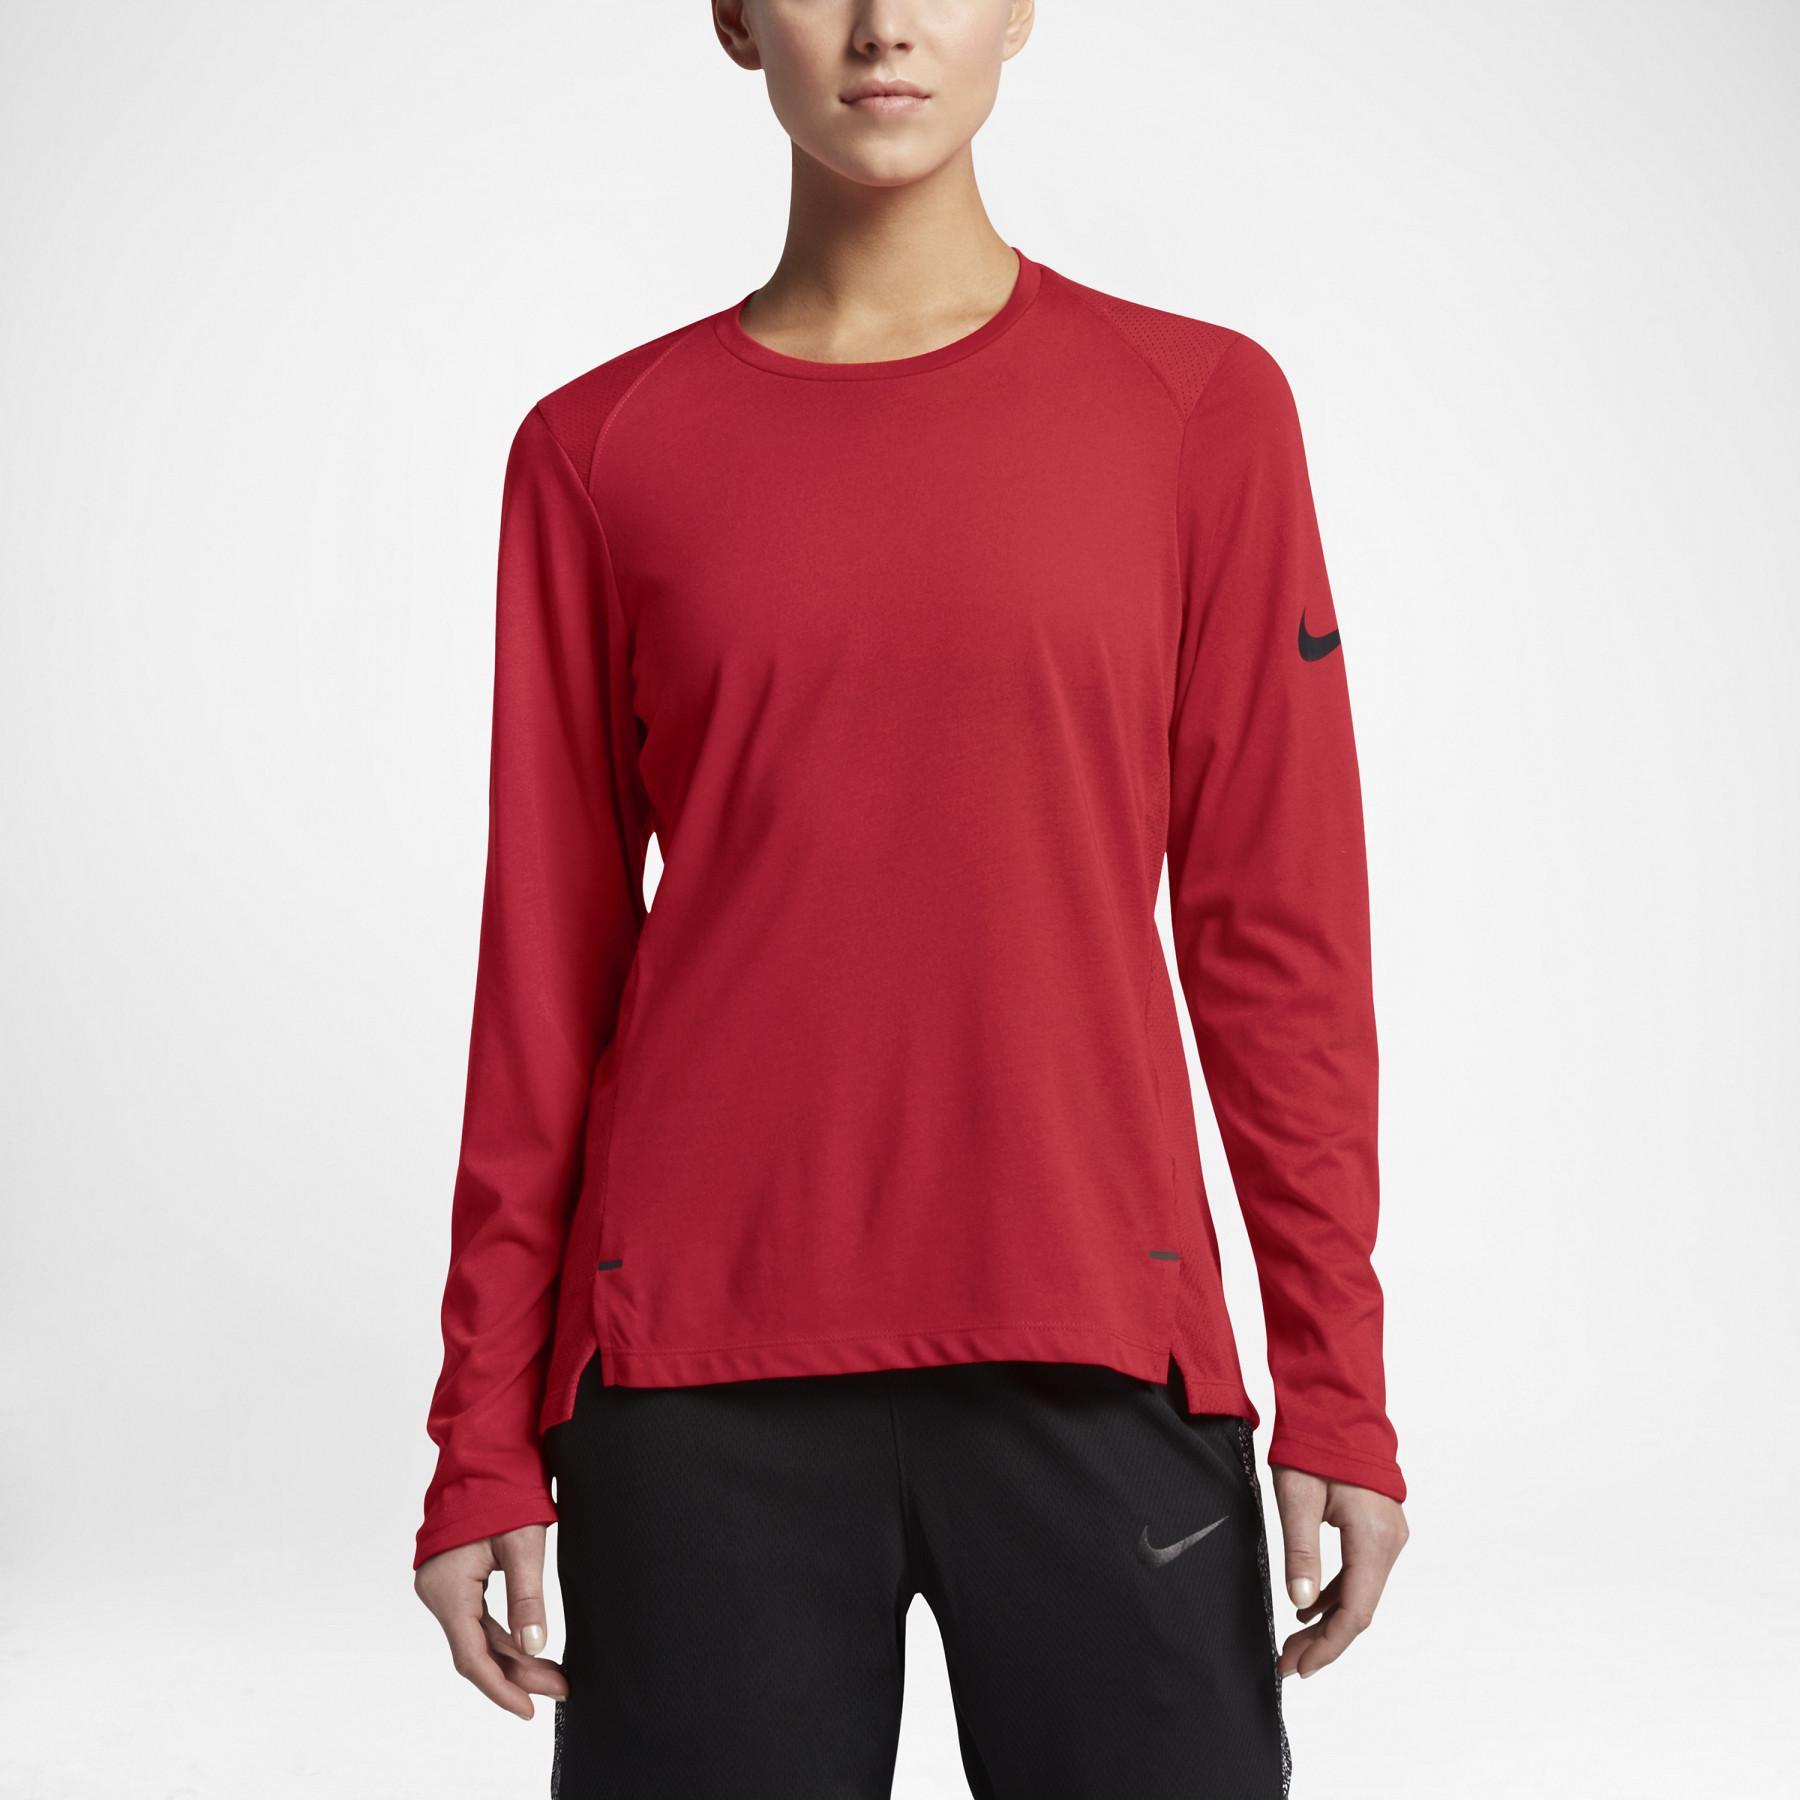 Women's long sleeve jersey Nike Dry Elite